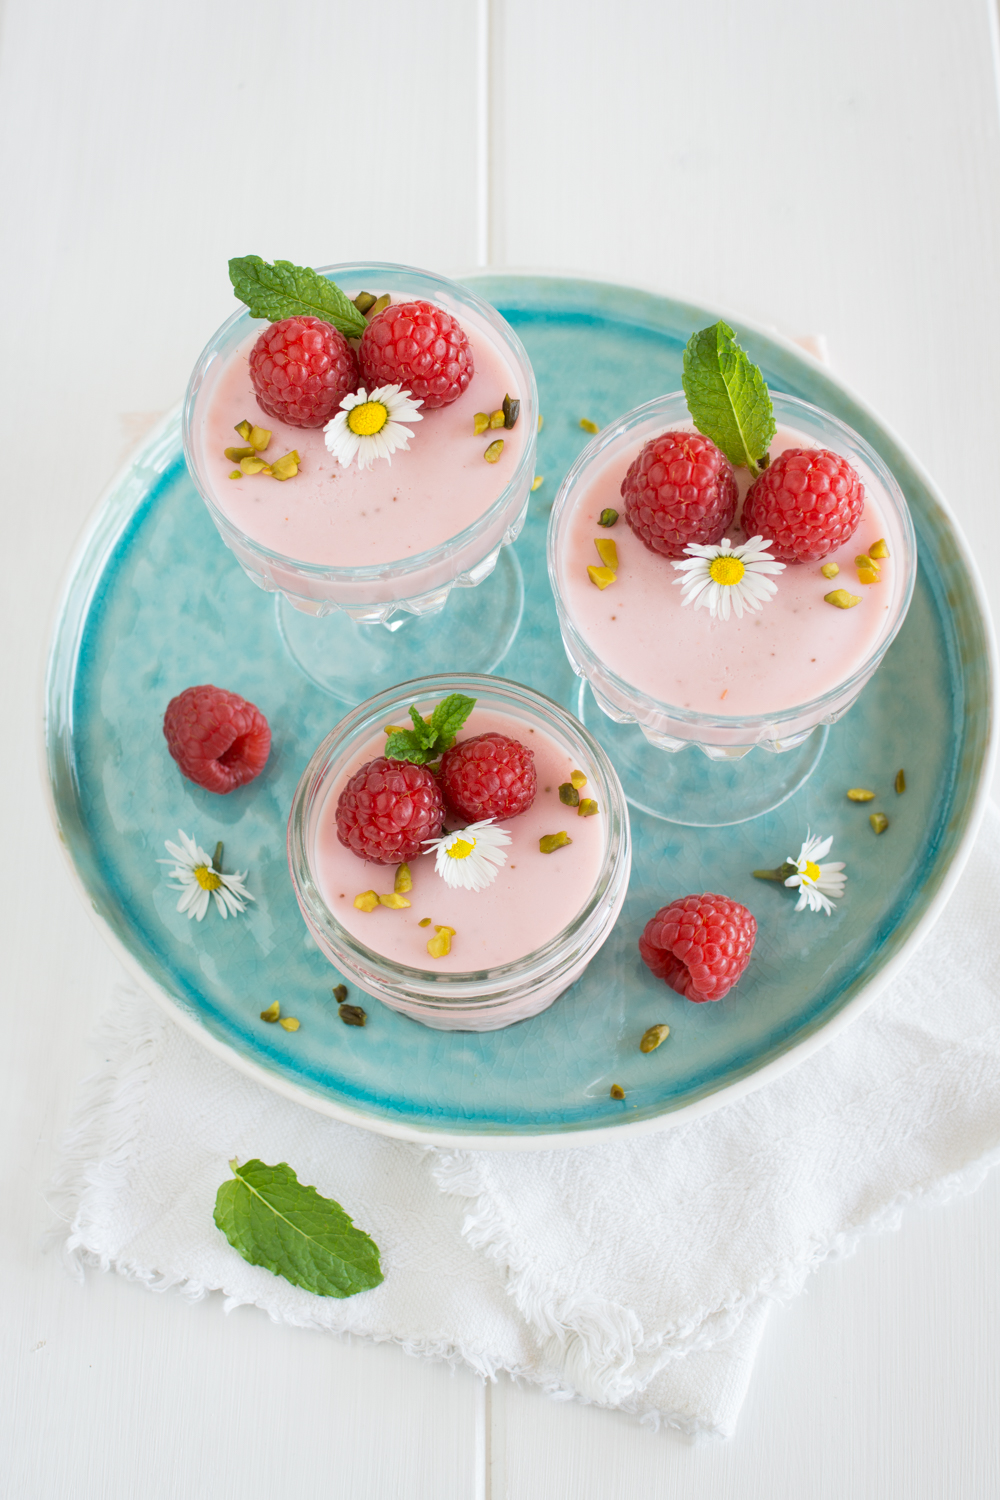 Sommerliches Dessert im Glas: Himbeercreme | Tolles Rezept